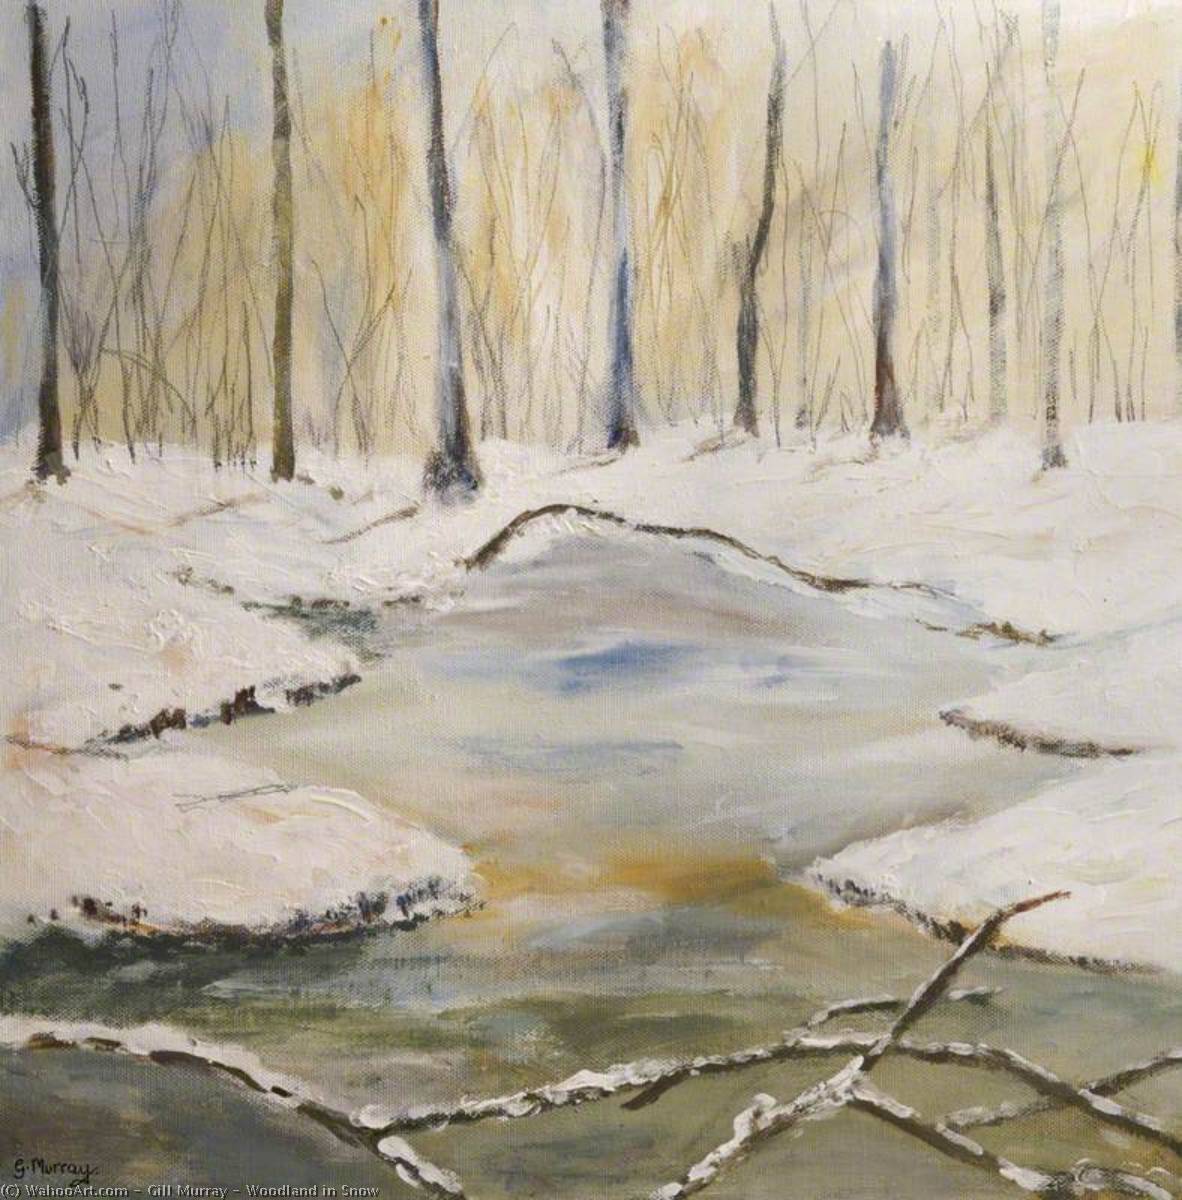 Woodland in Snow, 2008 by Gill Murray Gill Murray | ArtsDot.com